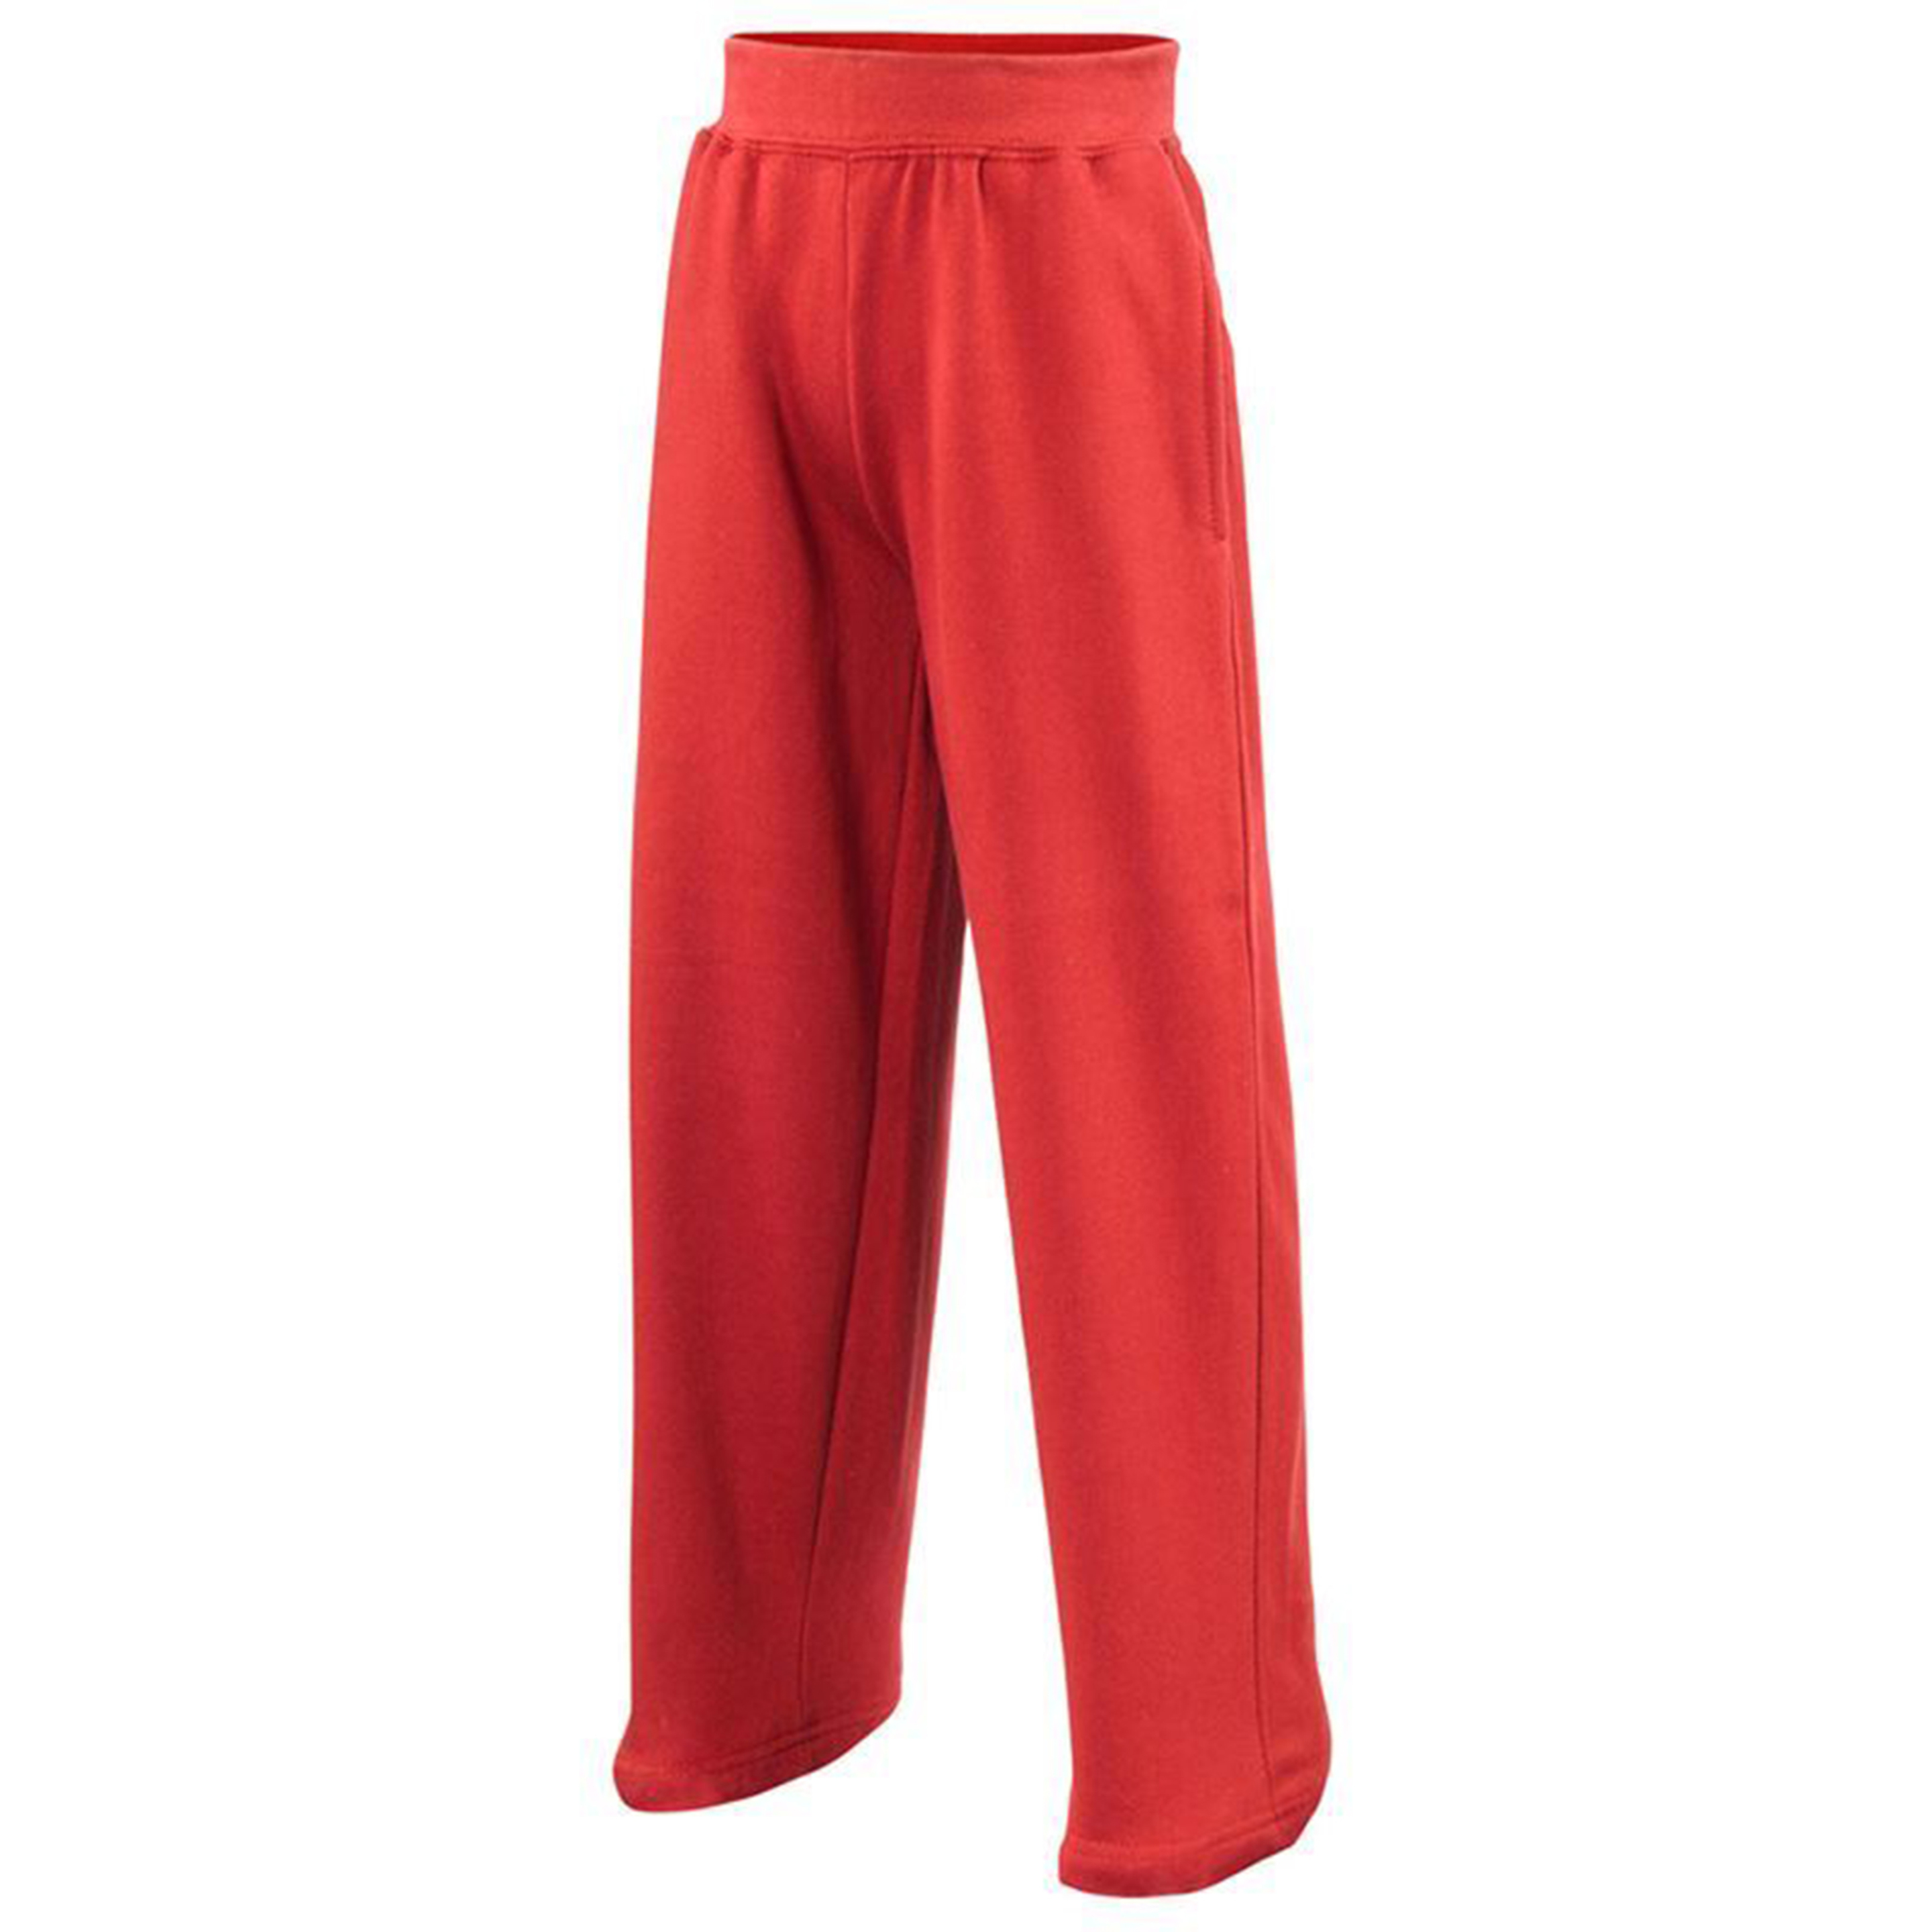 Pantalones De Deporte Awdis  (Paquete De 2) - Rojo  MKP